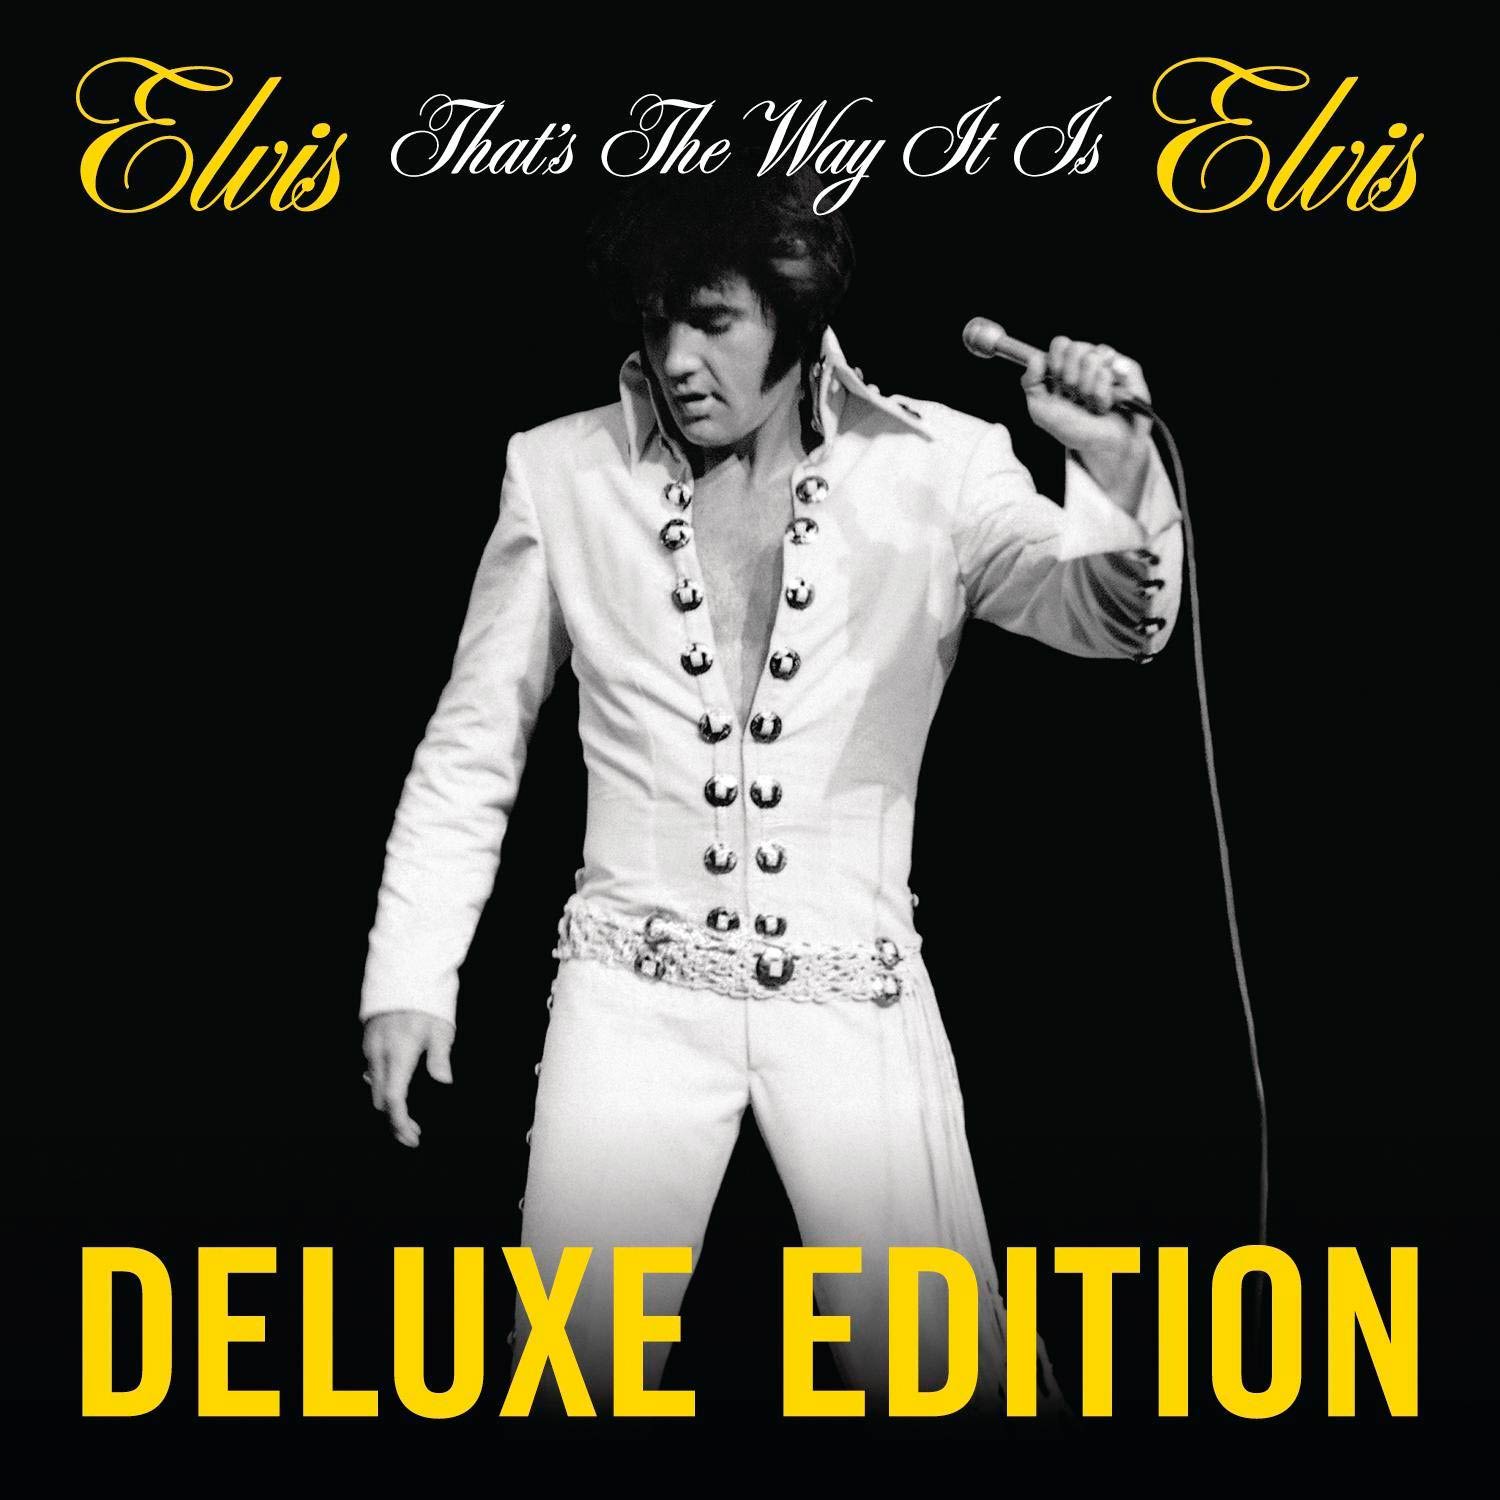 Elvis Presley: That's the way it is (Deluxe edition), la portada del disco1500 x 1500